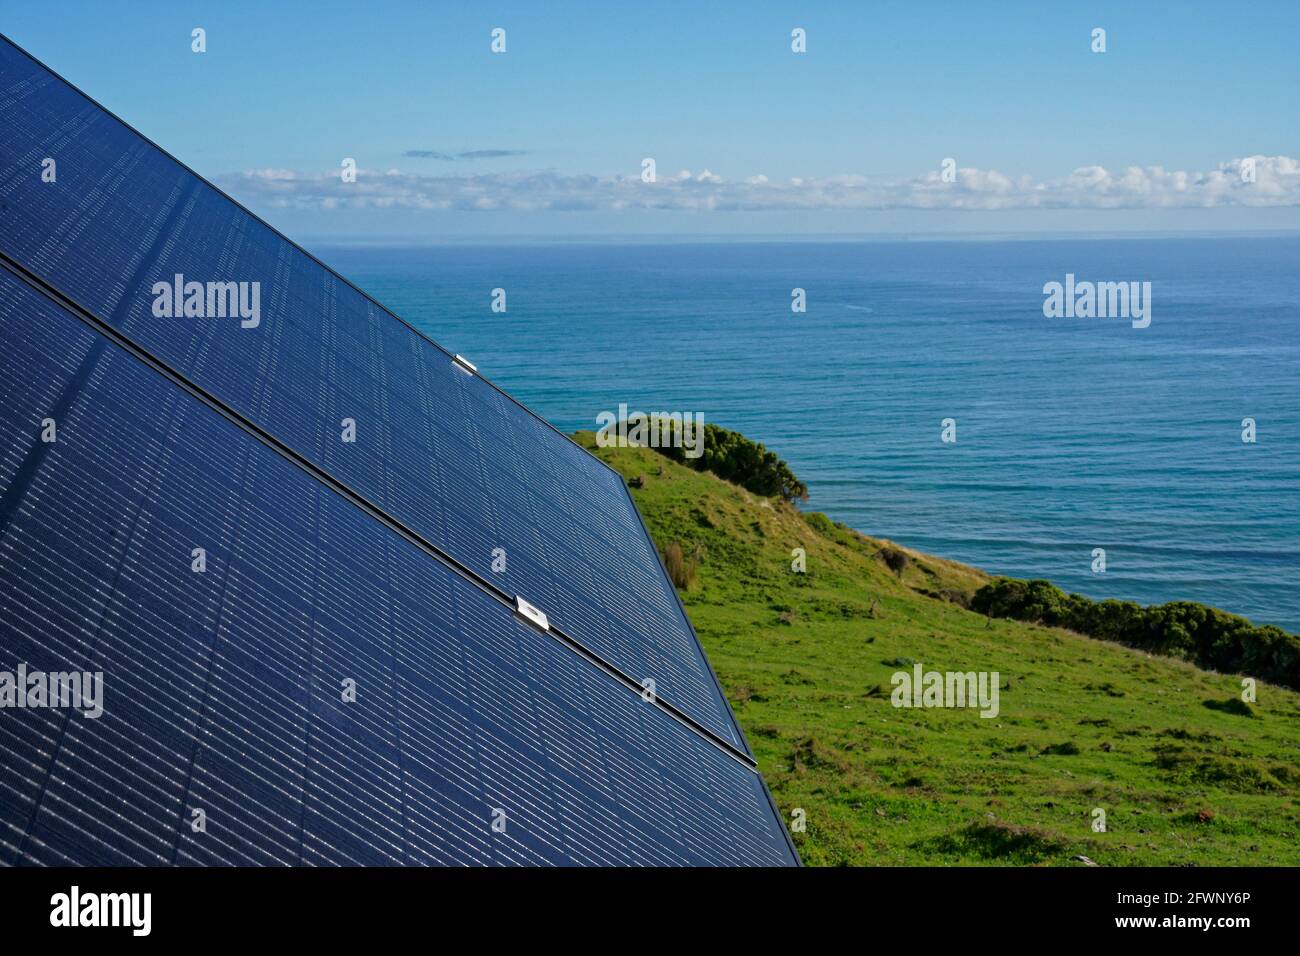 Solarpanel zur Bereitstellung von Solarstrom für ein netzabgekoppeltes Grundstück mit Blick auf den Ozean an der Westküste Neuseelands. Stockfoto